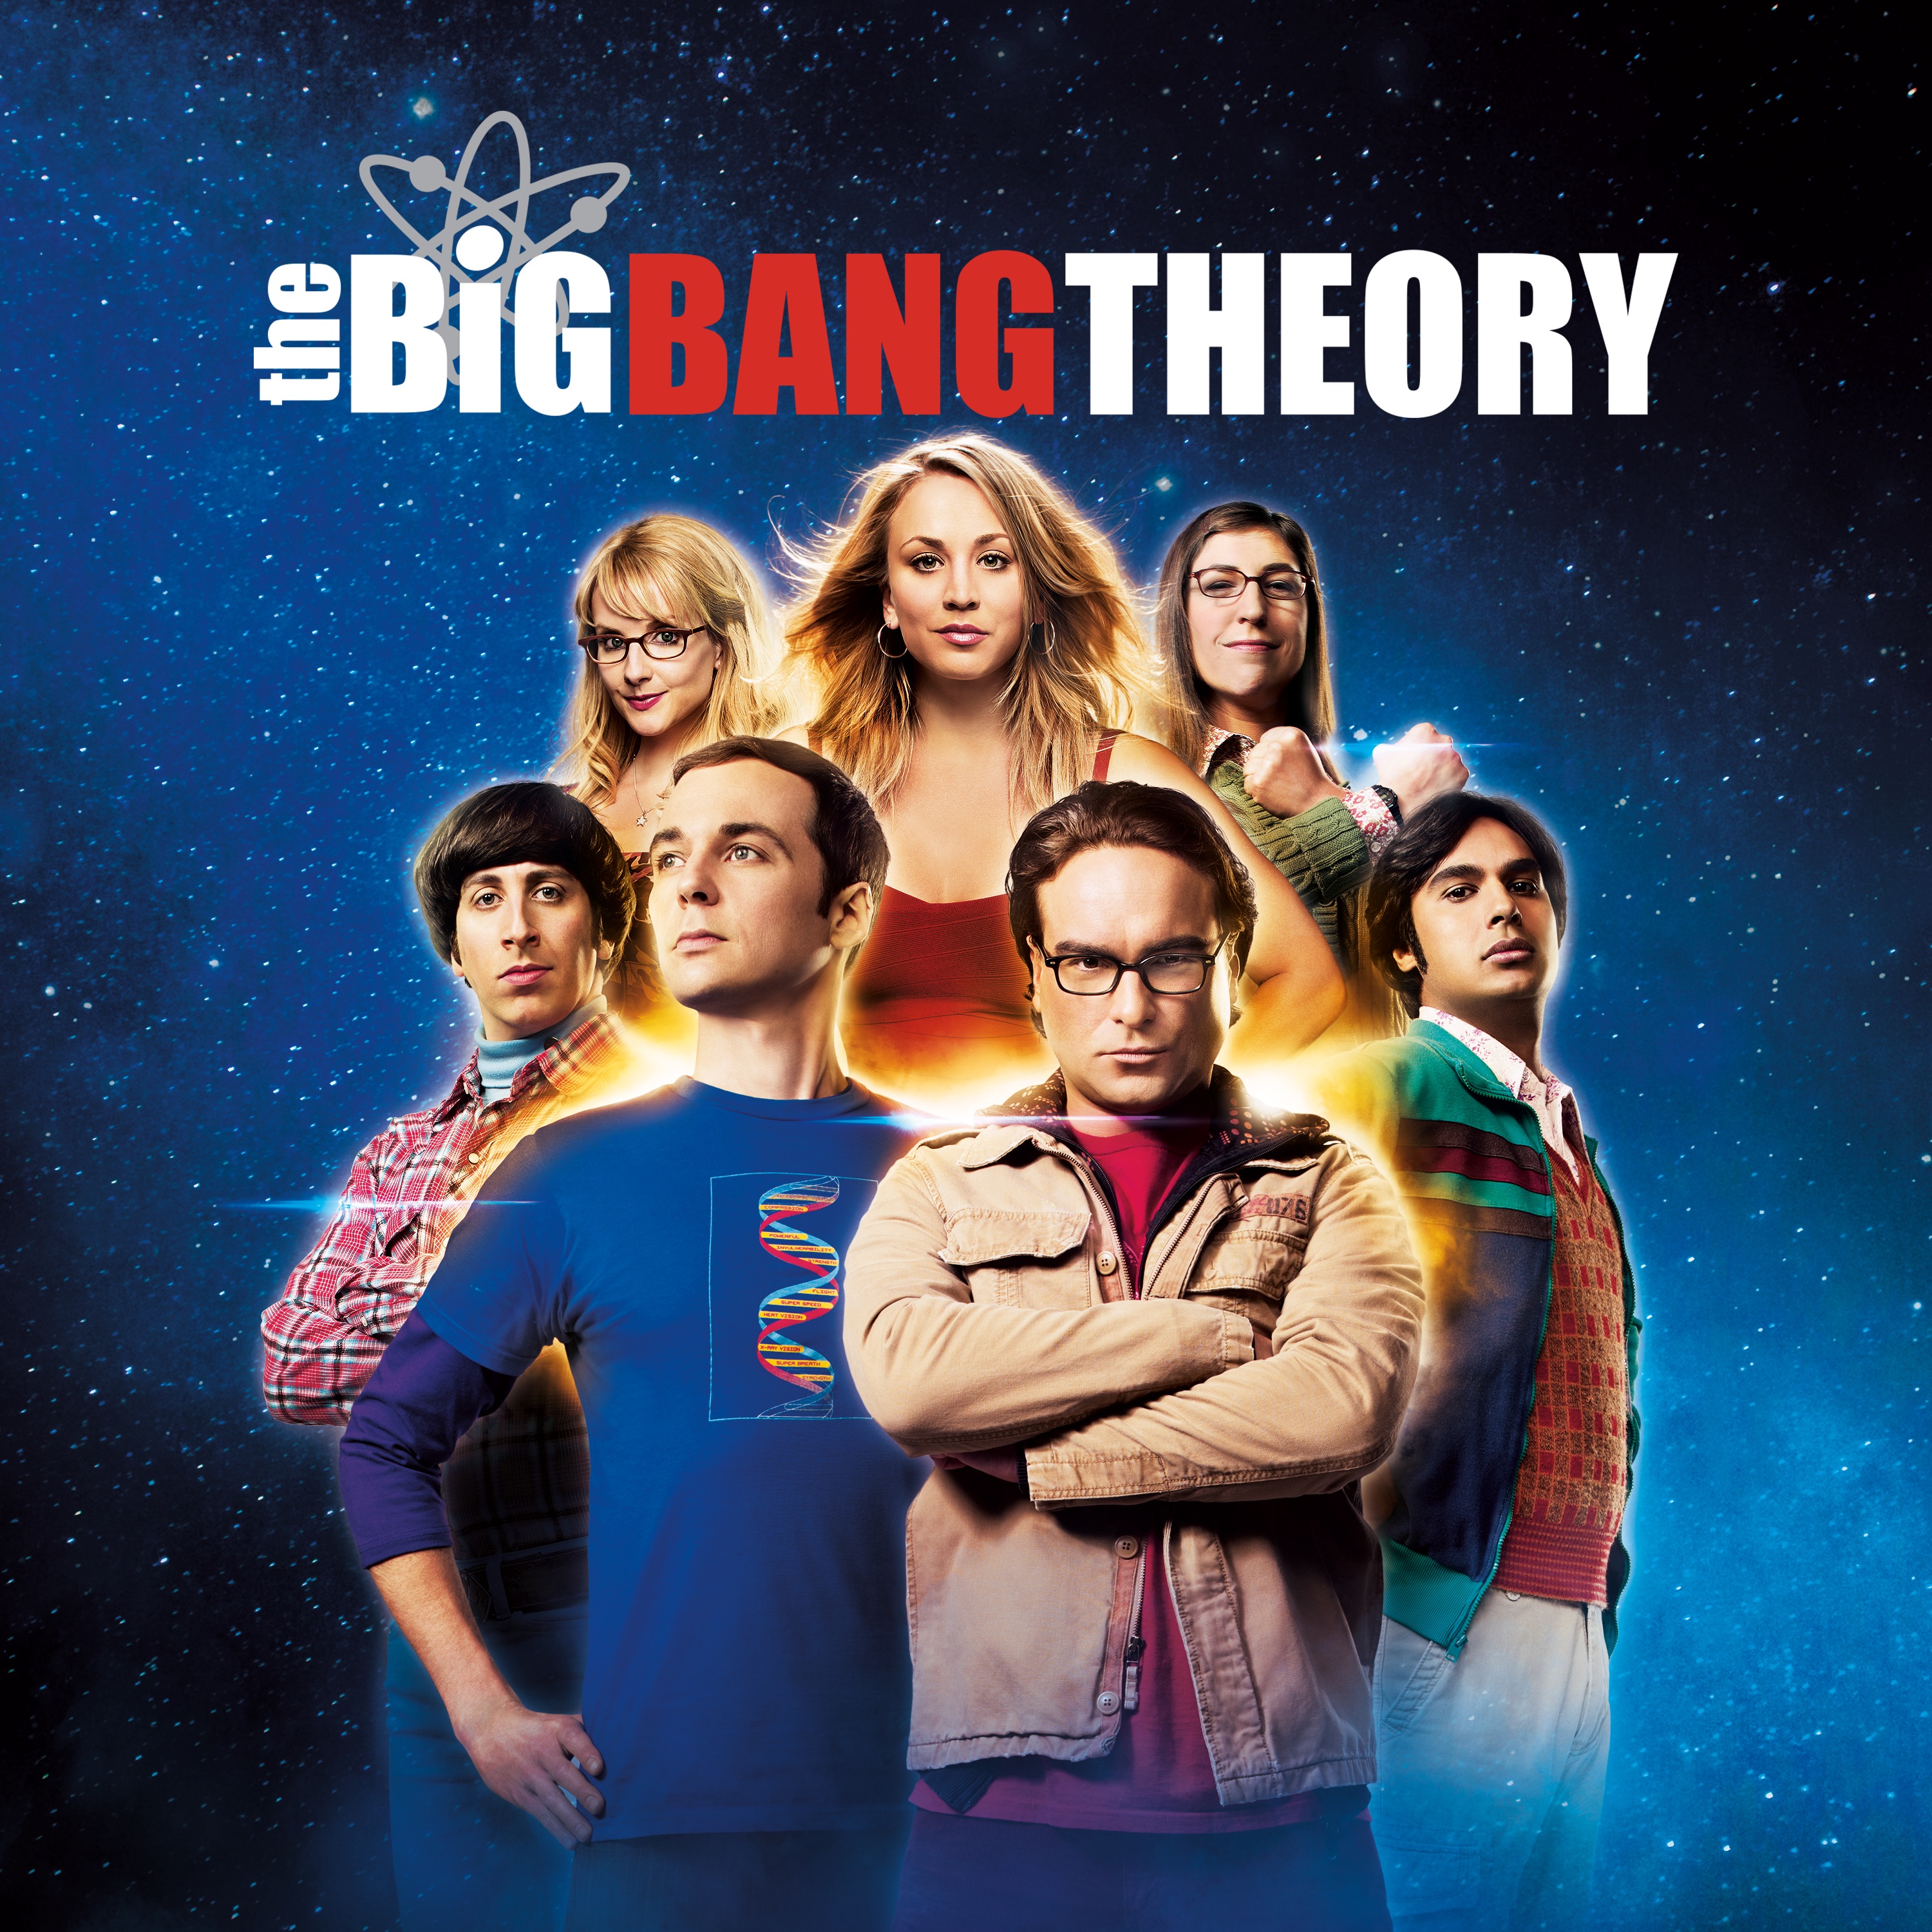 The Big Bang Theory Season 1 - The Big Bang Theory - Seasons 1-4 DVD